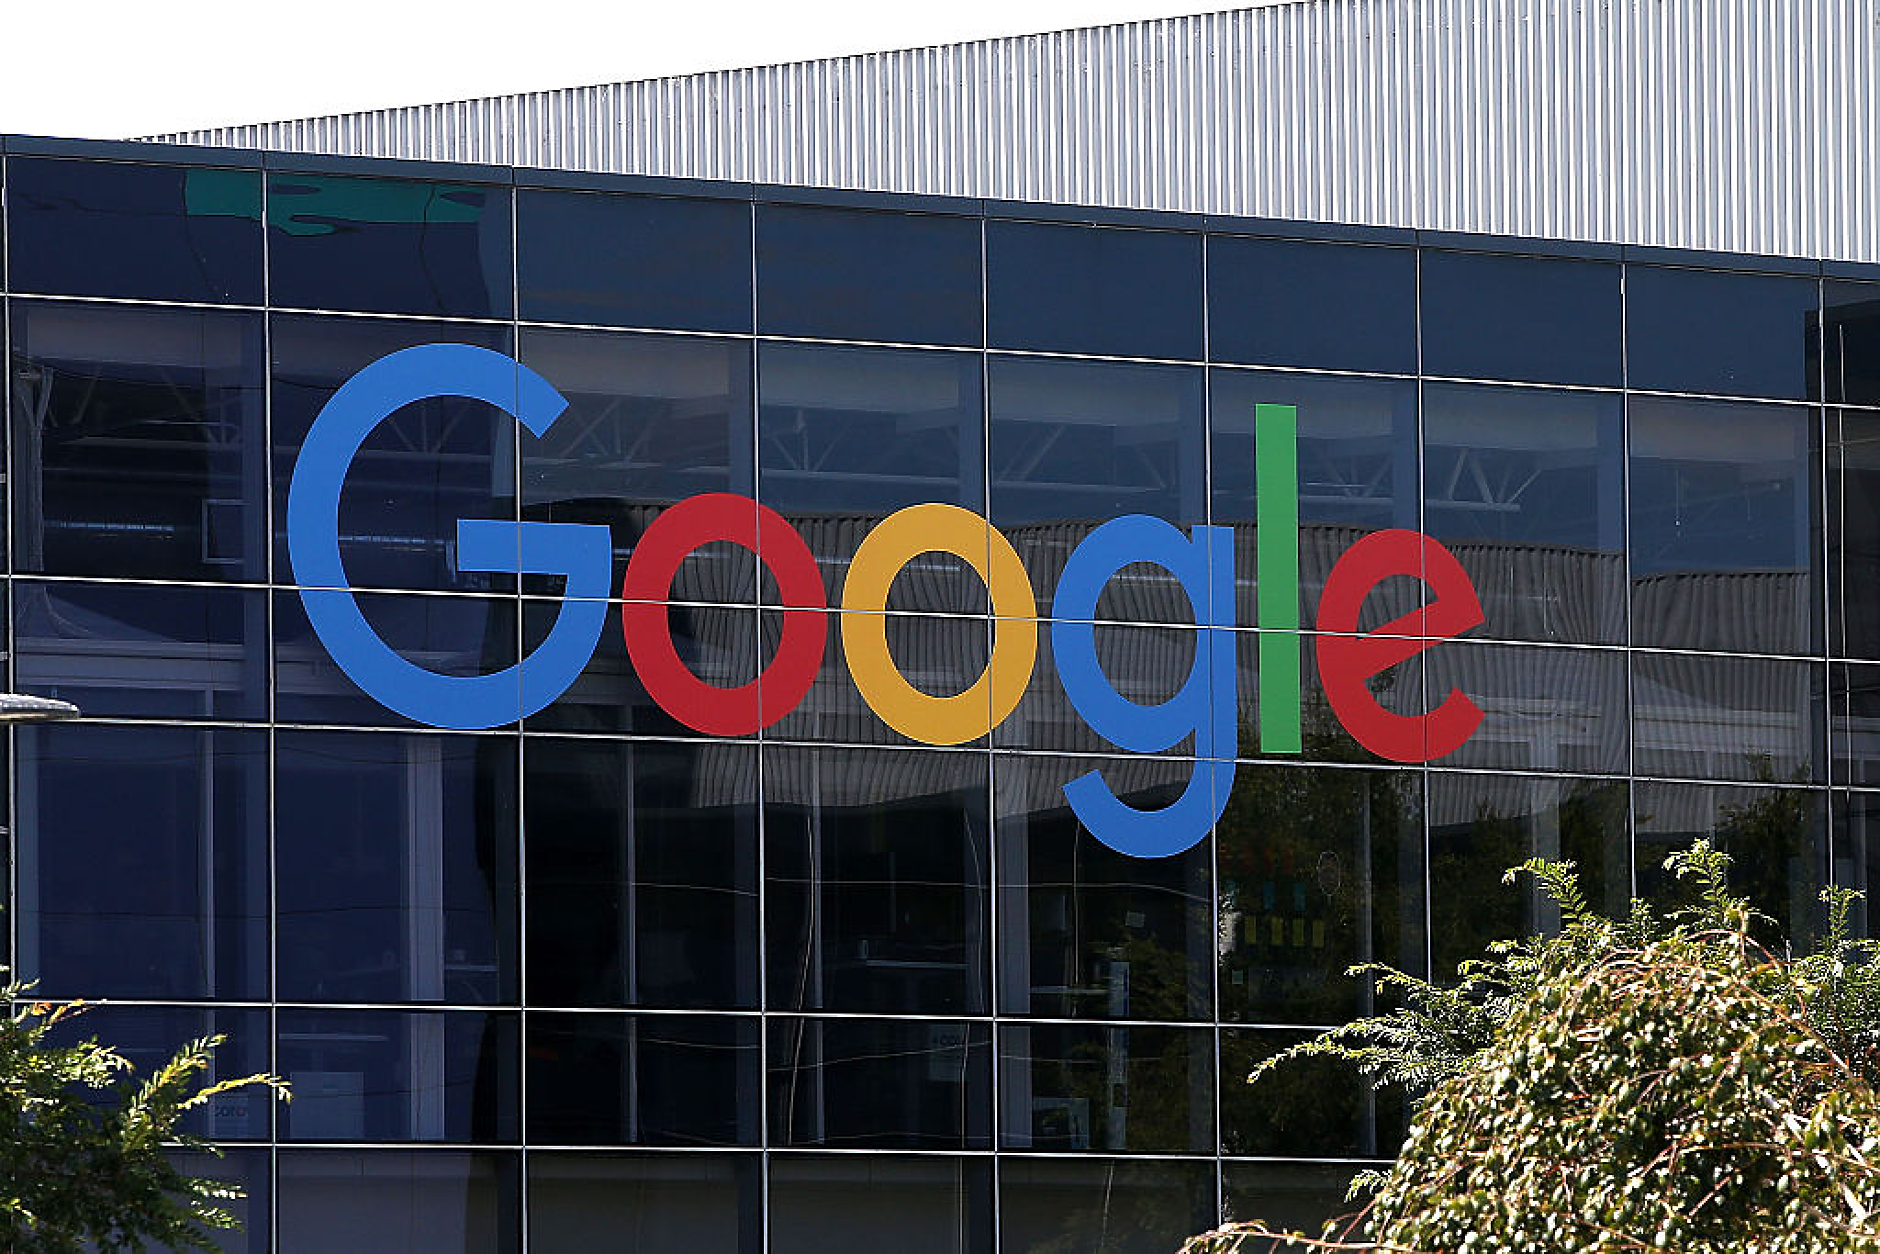 Google понася критики заради демонстрацията на новия си модел с изкуствен интелект Gemini